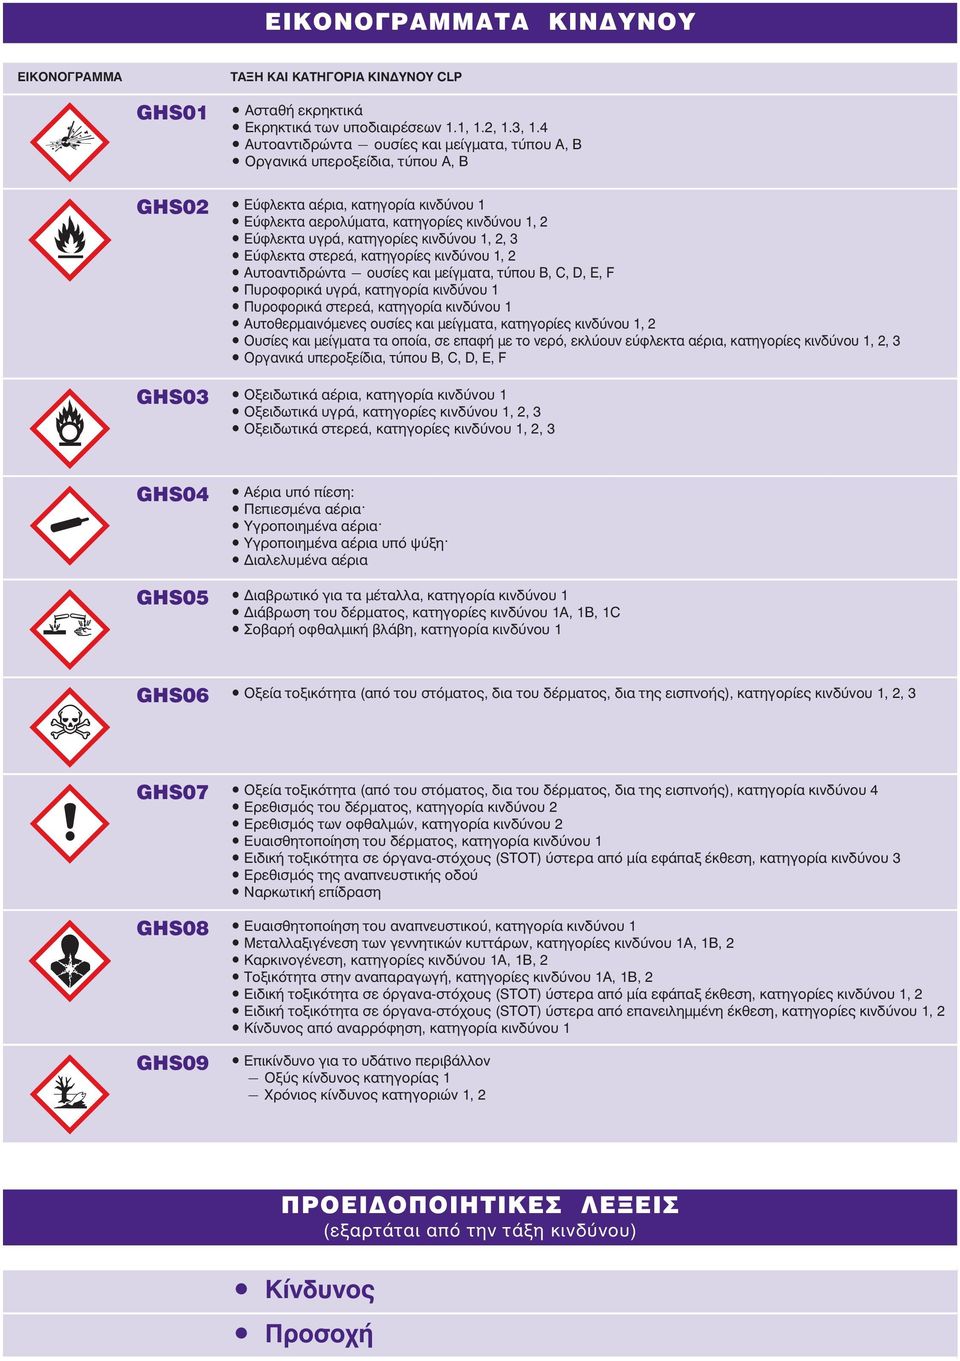 1, 2, 3 Εύφλεκτα στερεά, κατηγορίες κινδύνου 1, 2 Αυτοαντιδρώντα ουσίες και μείγματα, τύπου Β, C, D, E, F Πυροφορικά υγρά, κατηγορία κινδύνου 1 Πυροφορικά στερεά, κατηγορία κινδύνου 1